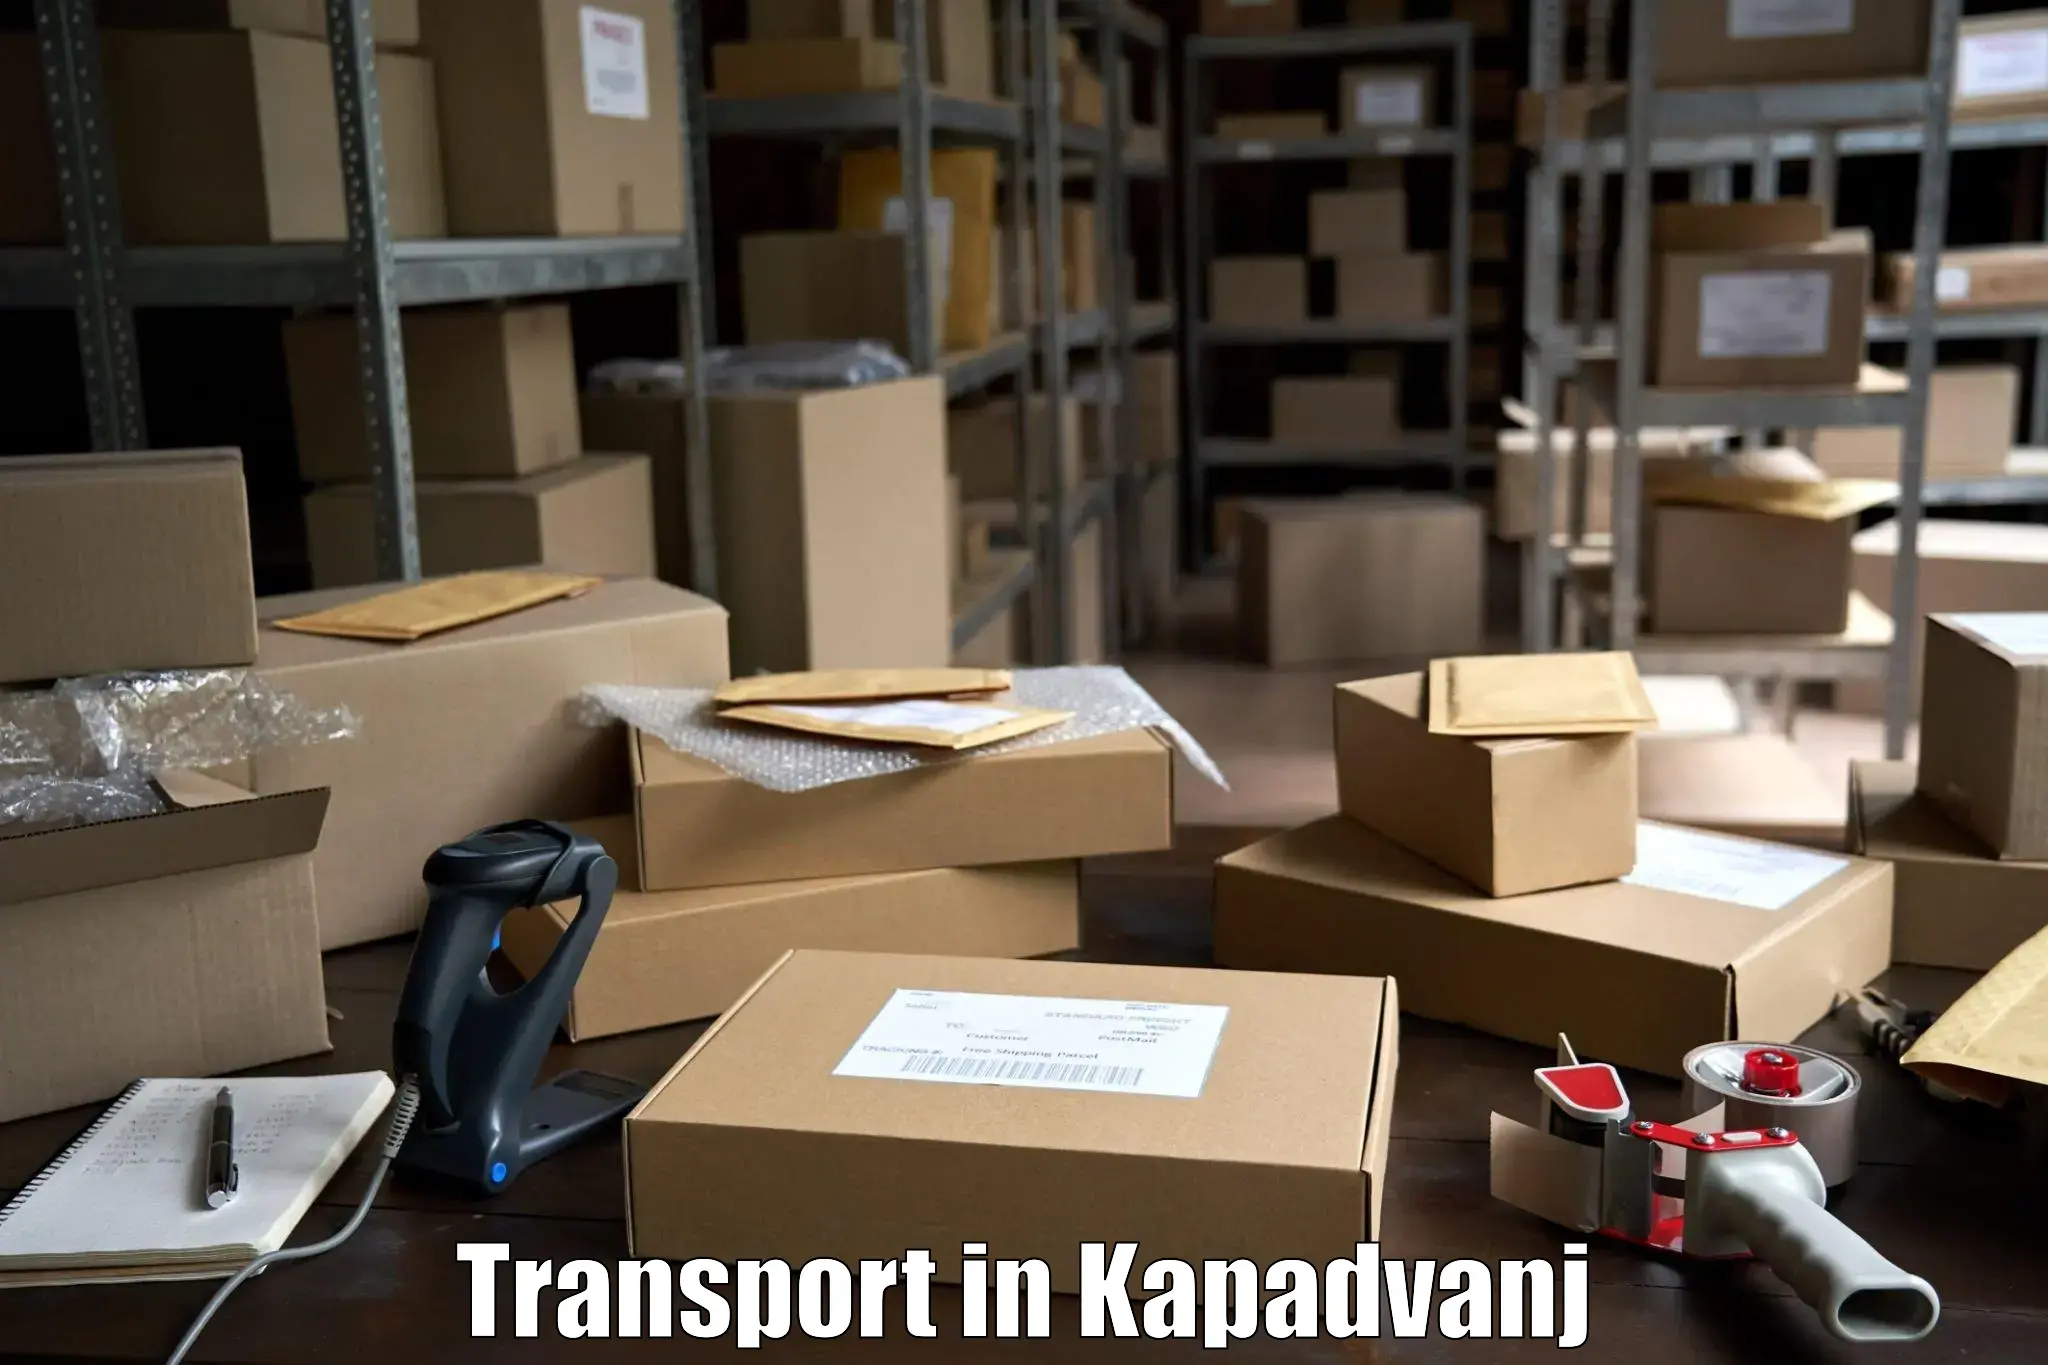 Road transport services in Kapadvanj